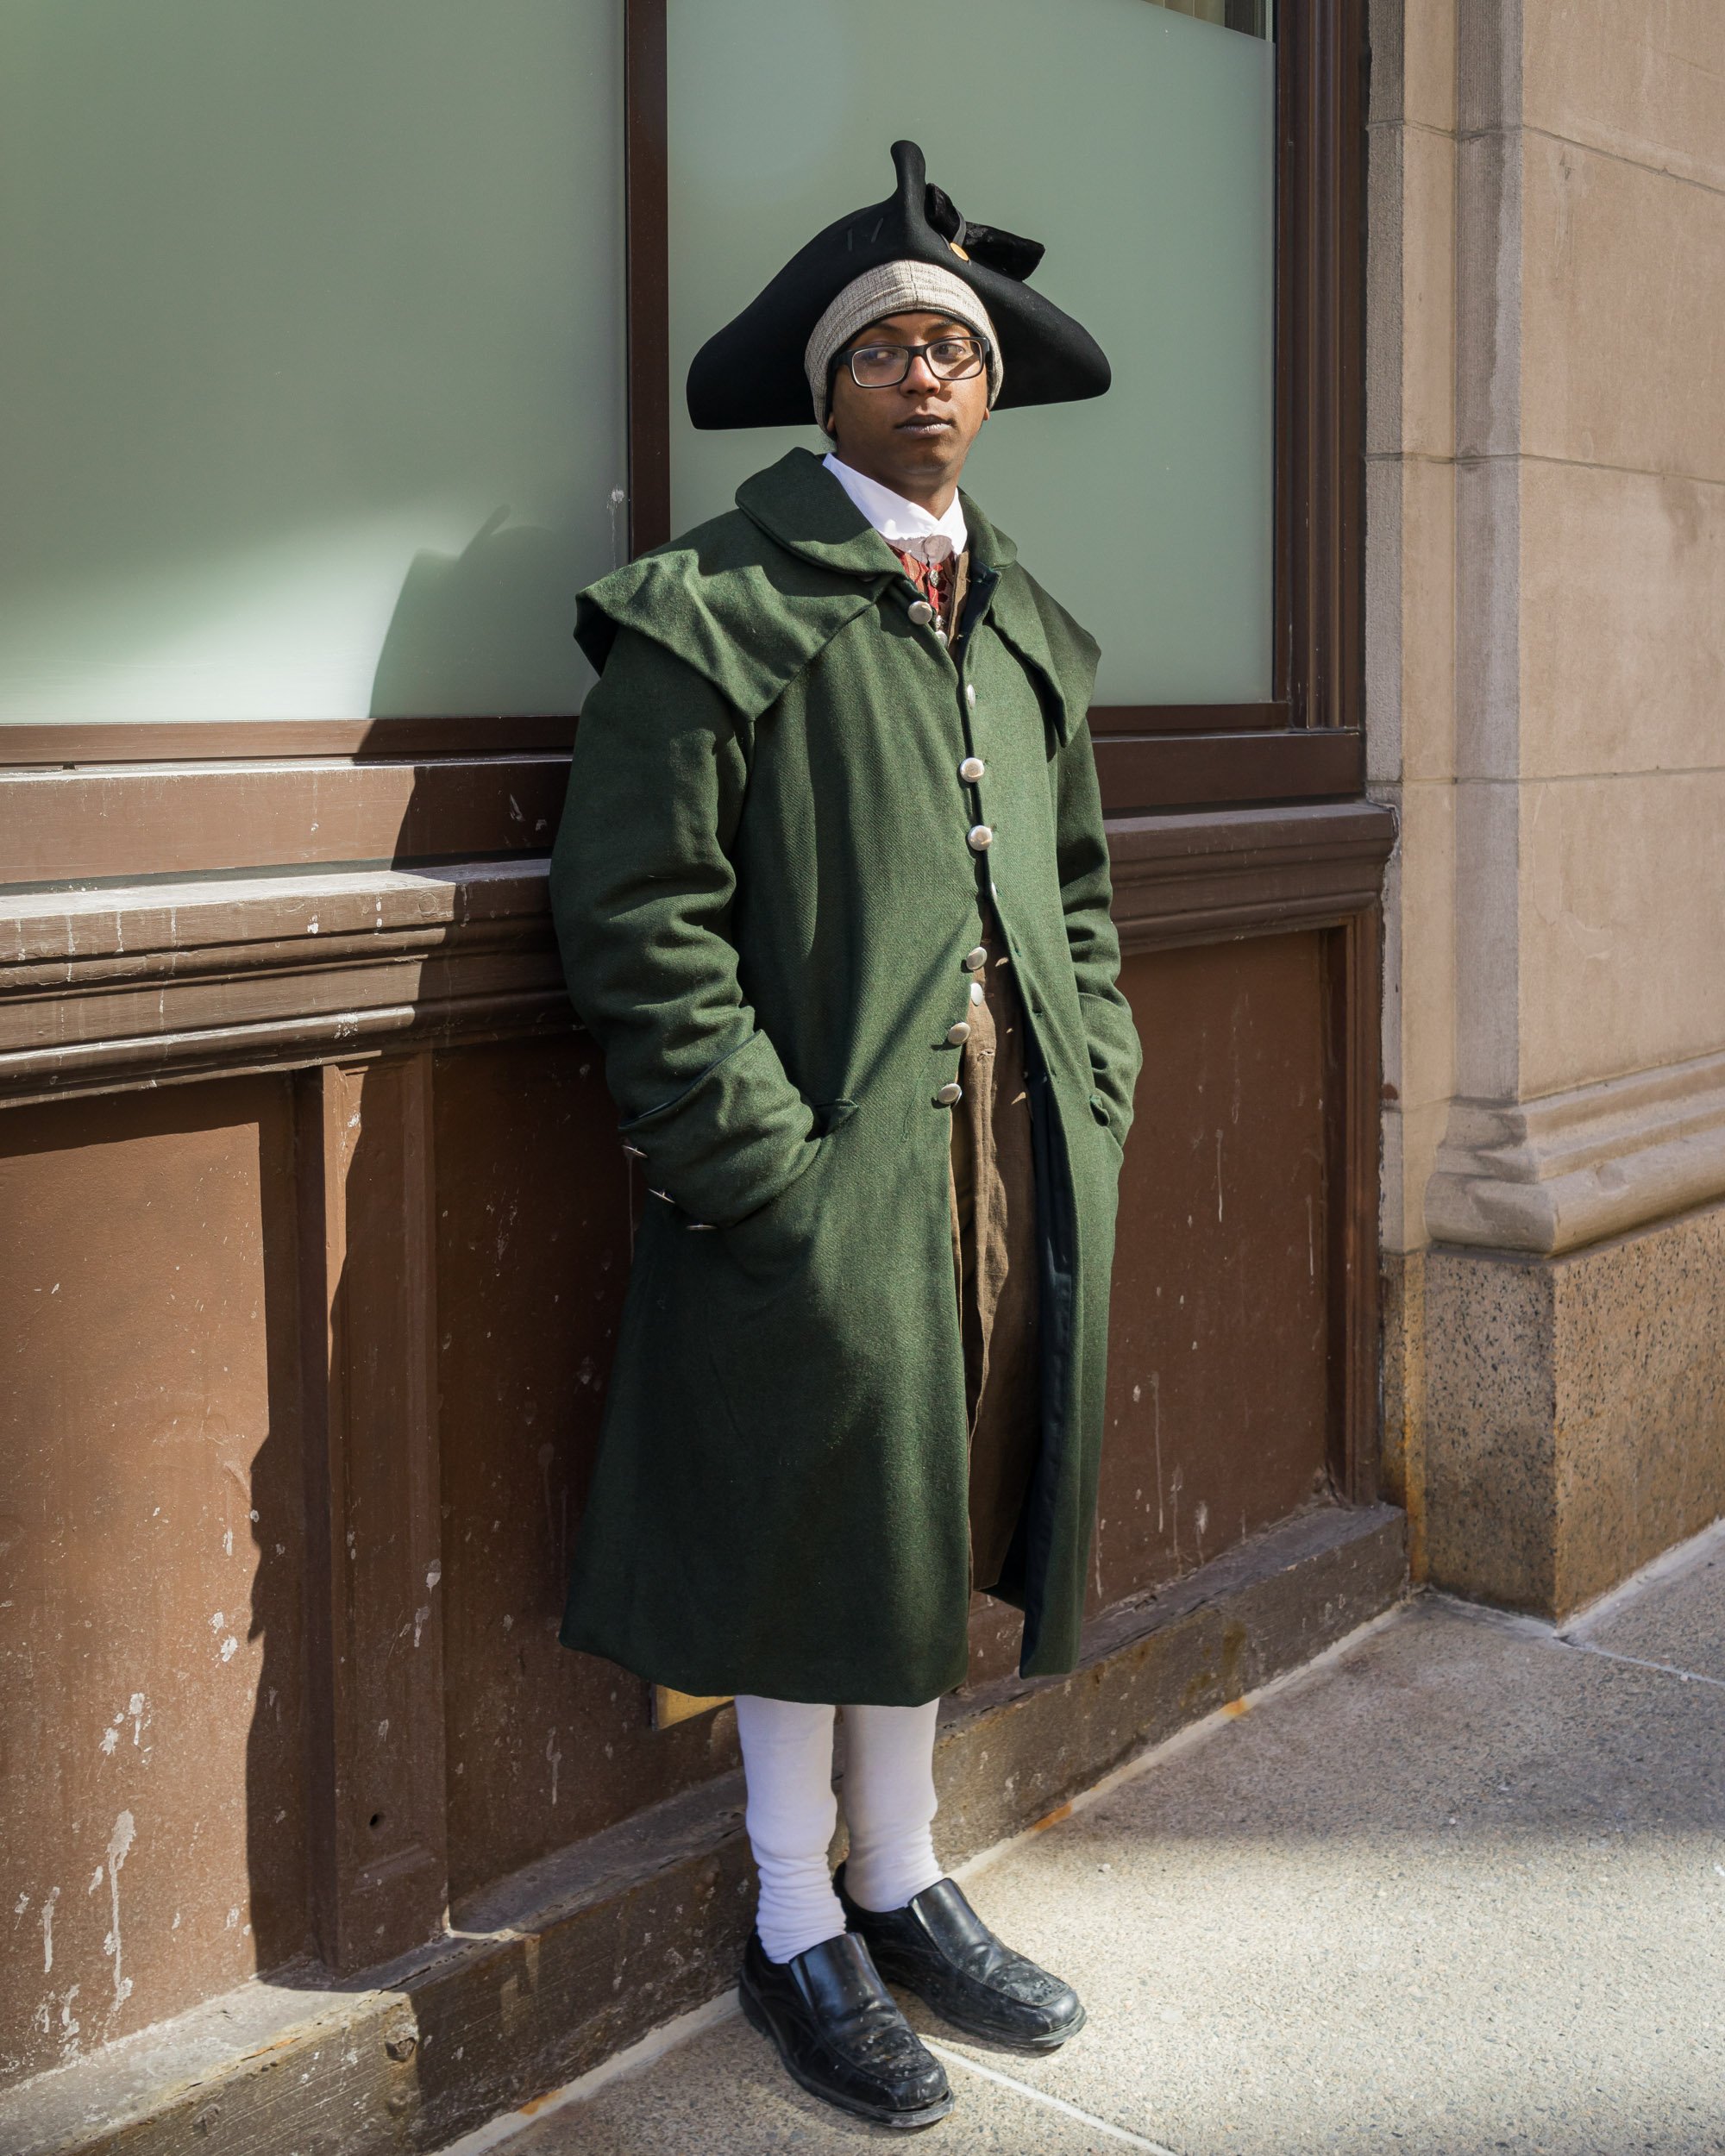 Colonial Man, Boston